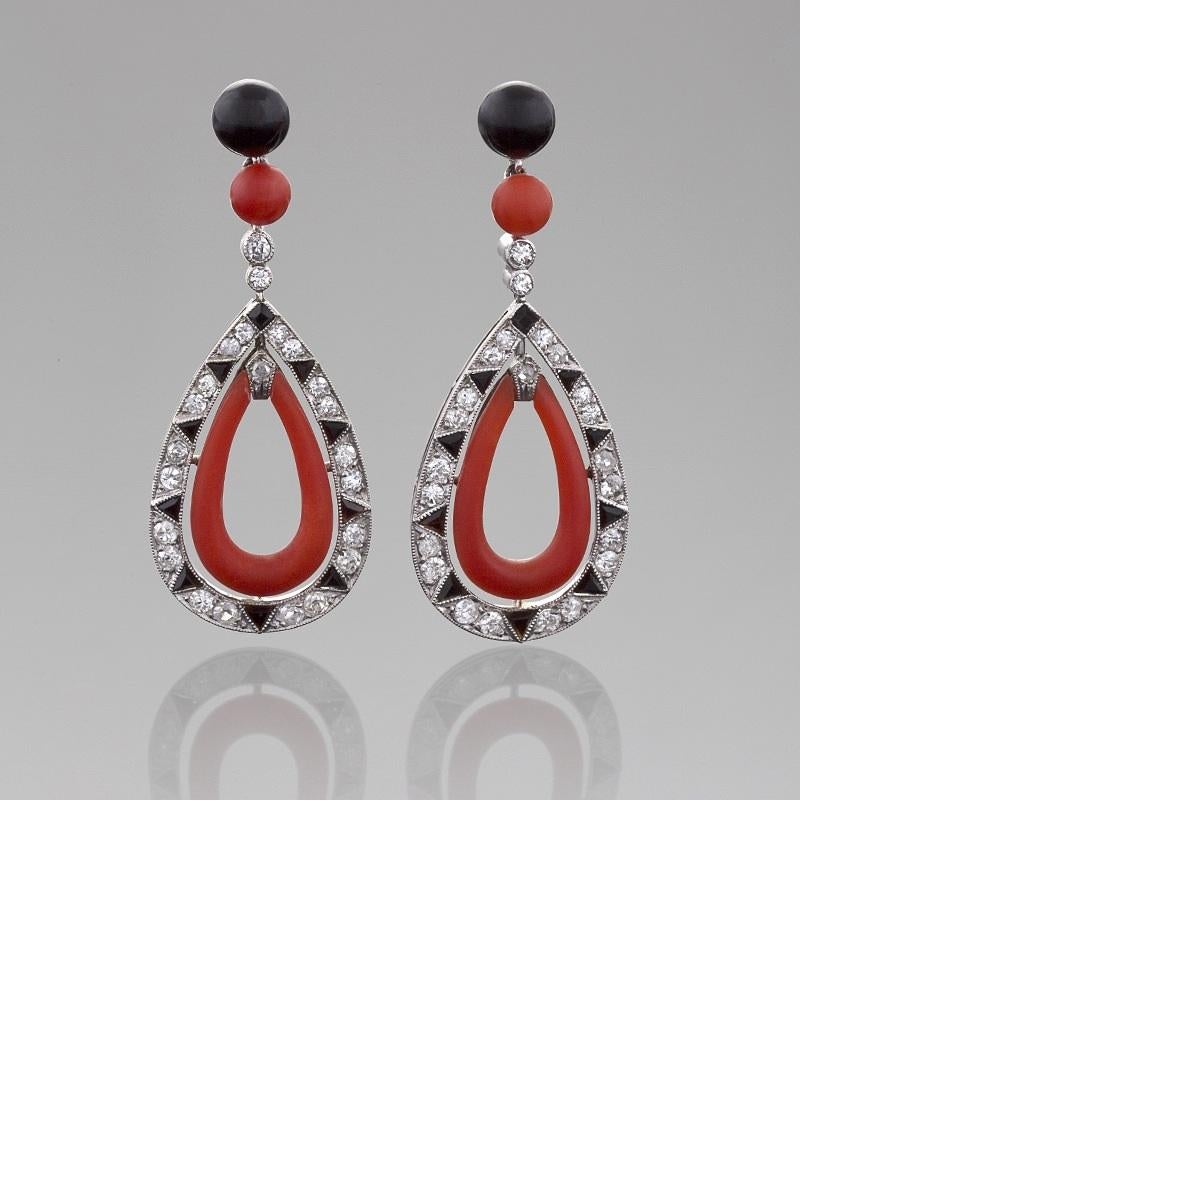 Ein Paar französische Art-Déco-Ohrringe aus Platin mit Diamanten, roter Koralle und Onyx. Die Ohrring-Oberteile bestehen aus schwarzen Onyx- und Korallenperlen, an denen birnenförmige Tropfen mit 46 Diamanten im alten europäischen Schliff mit einem